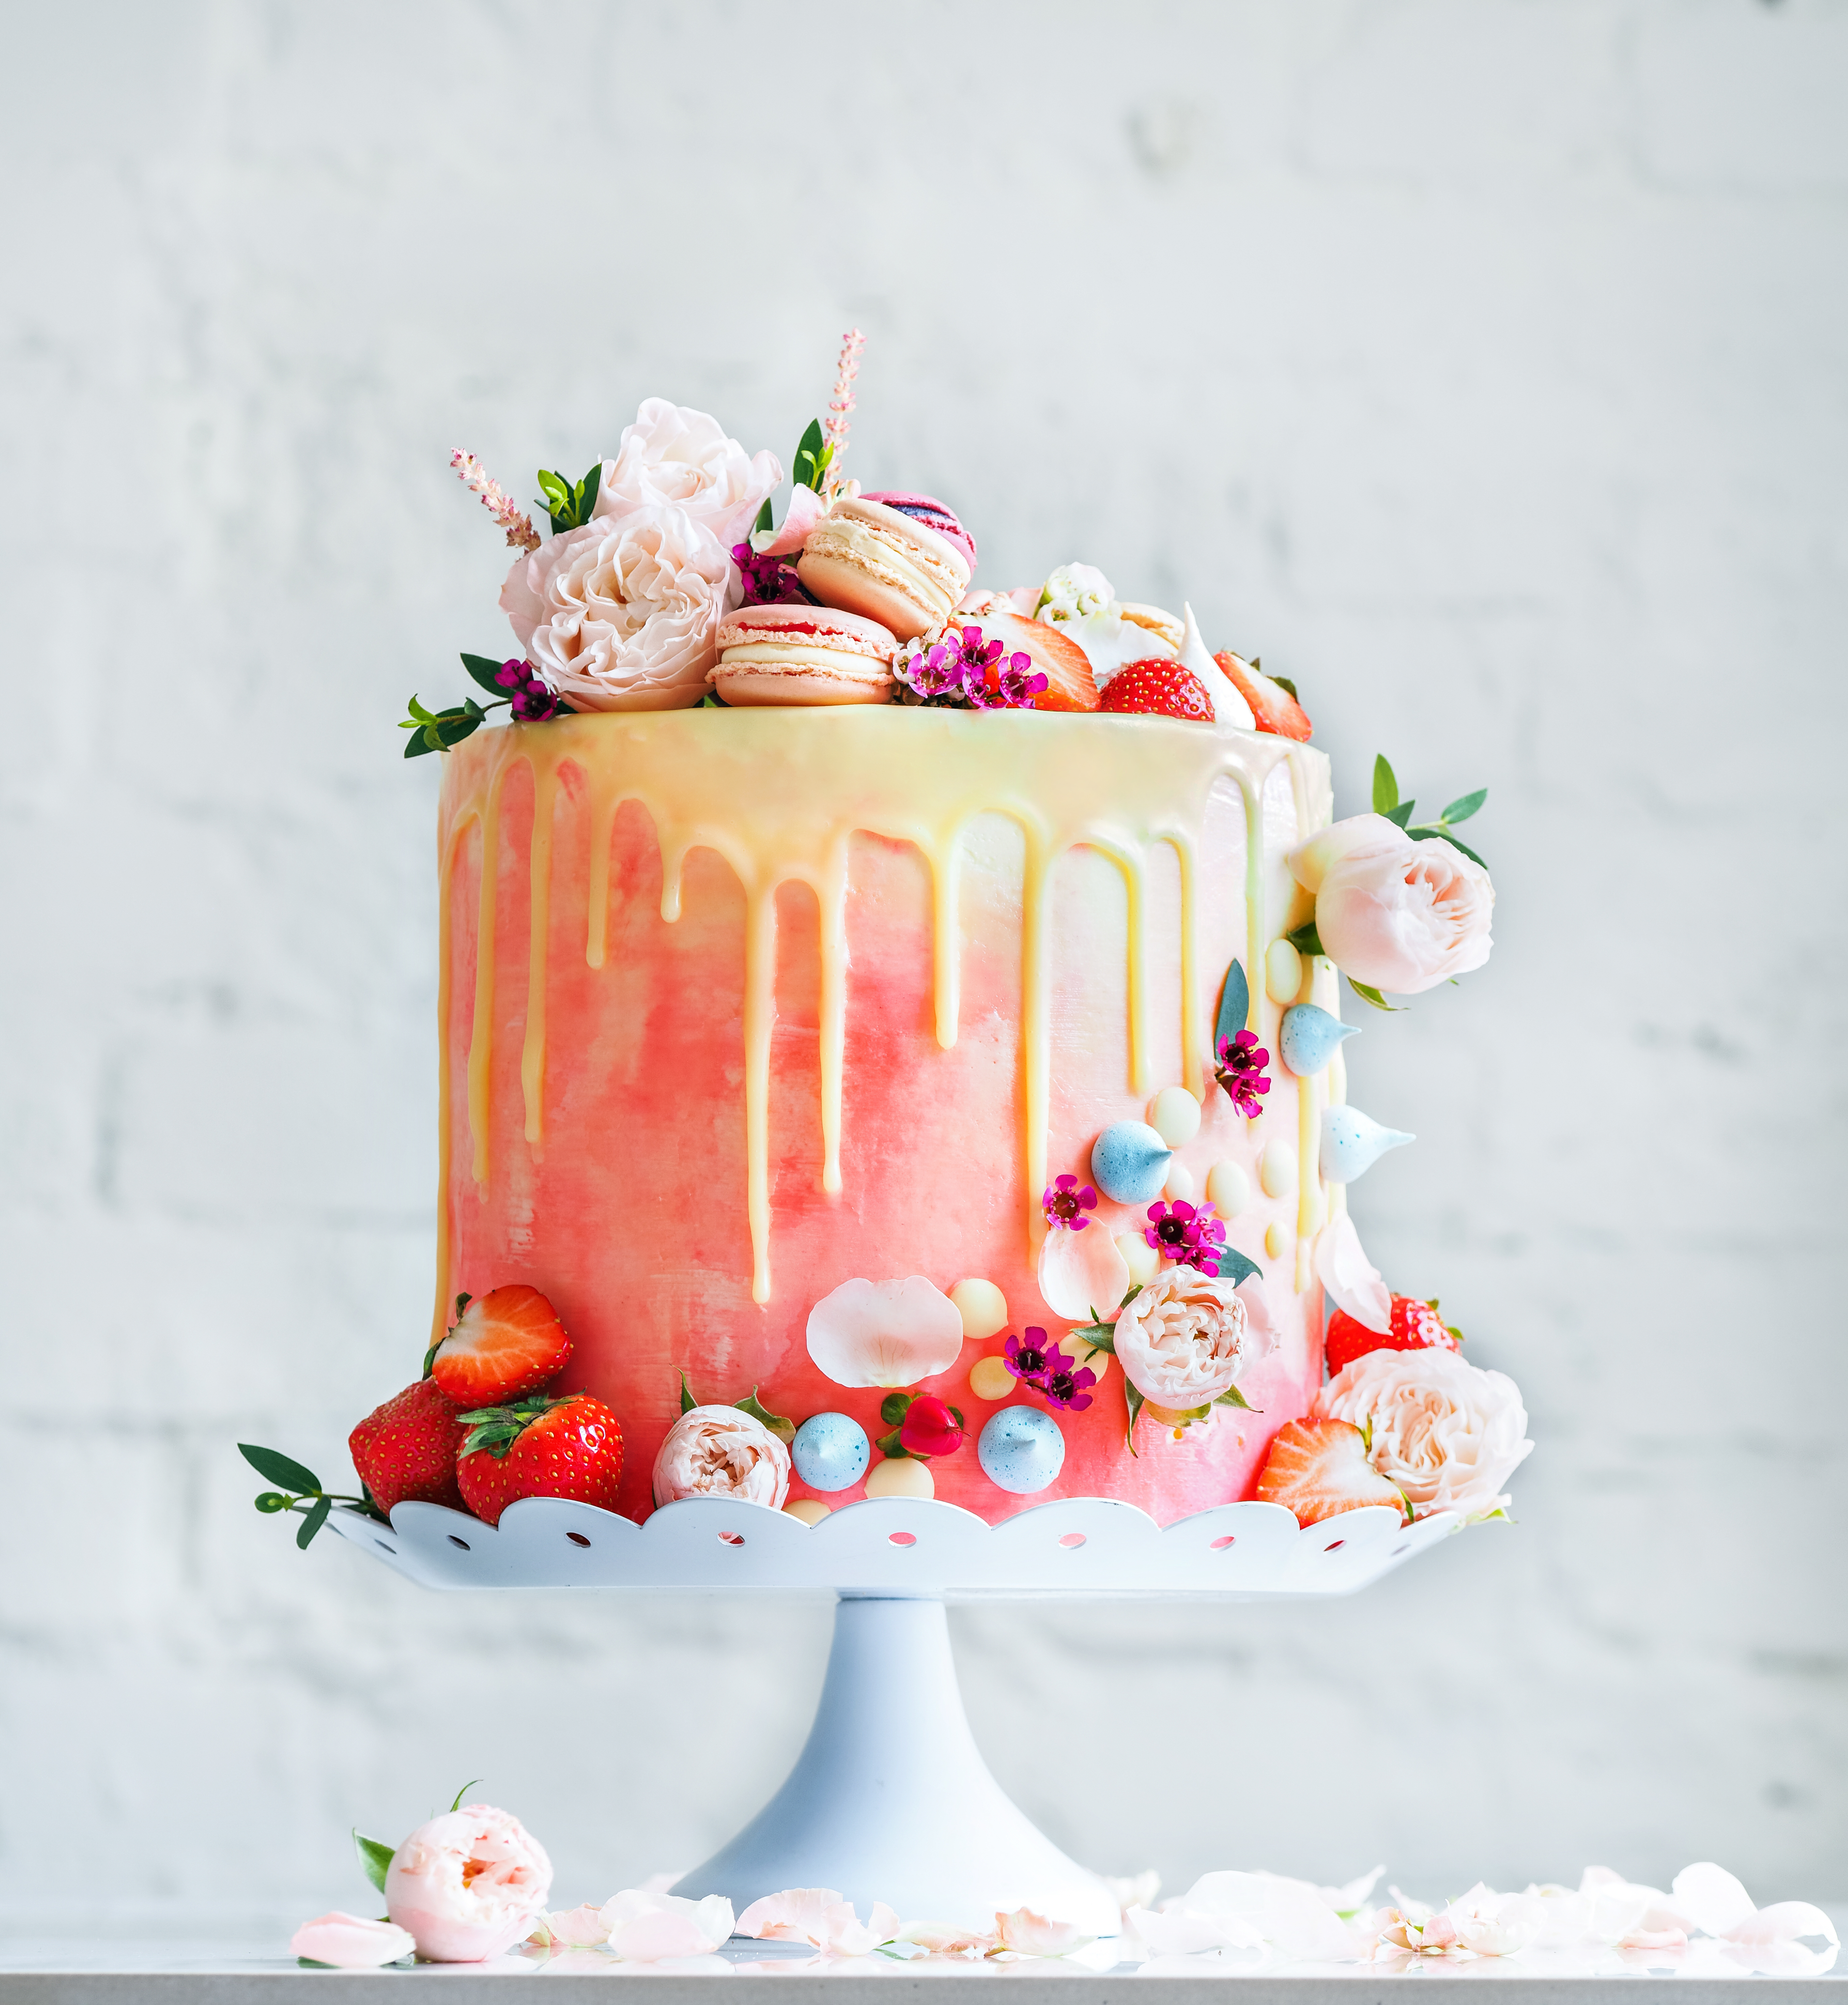 Gâteau de mariage avec des macarons aux fleurs et des myrtilles | Source : Getty Images